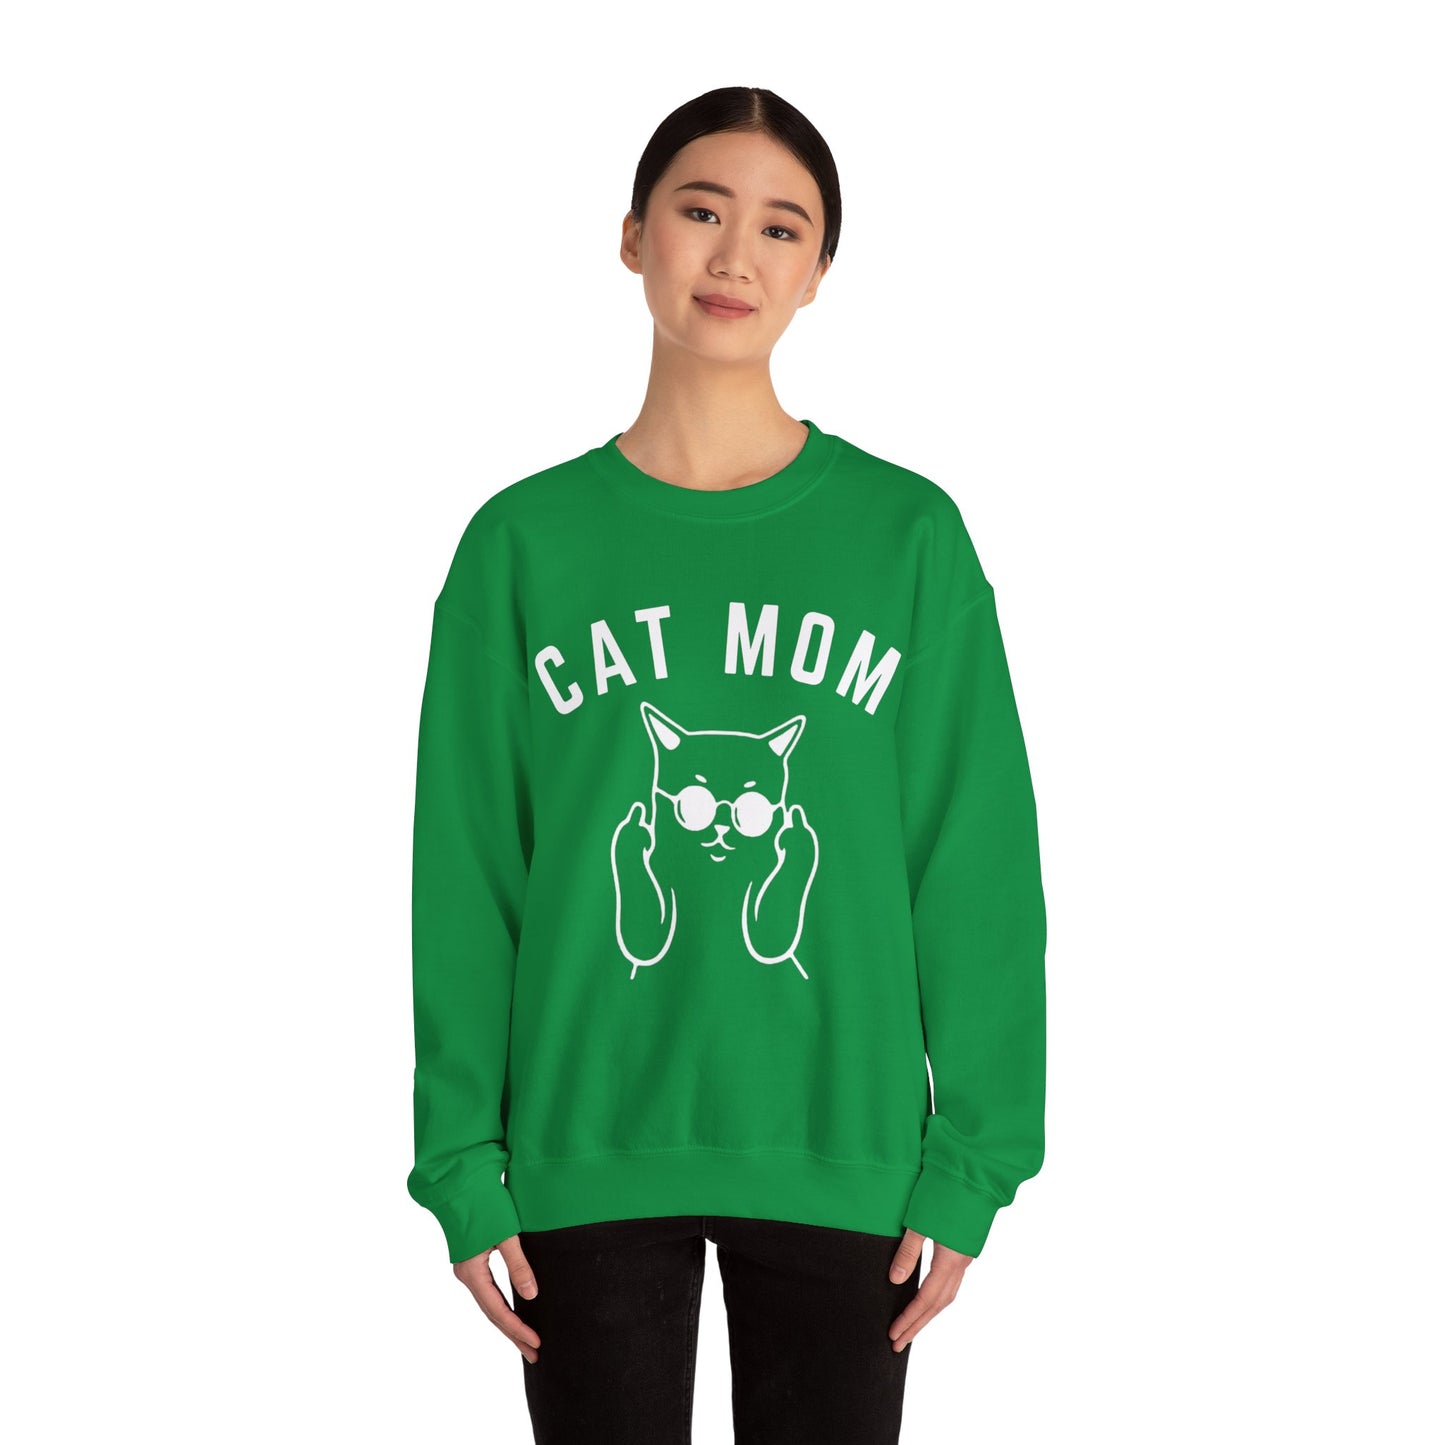 Cat Mom Sweatshirt, Funny Pet Lover Sweatshirt for Her, Cat Mama Sweatshirt for Mom Gift from Kids, Cat T-Sweatshirt Gift for Women, S1111